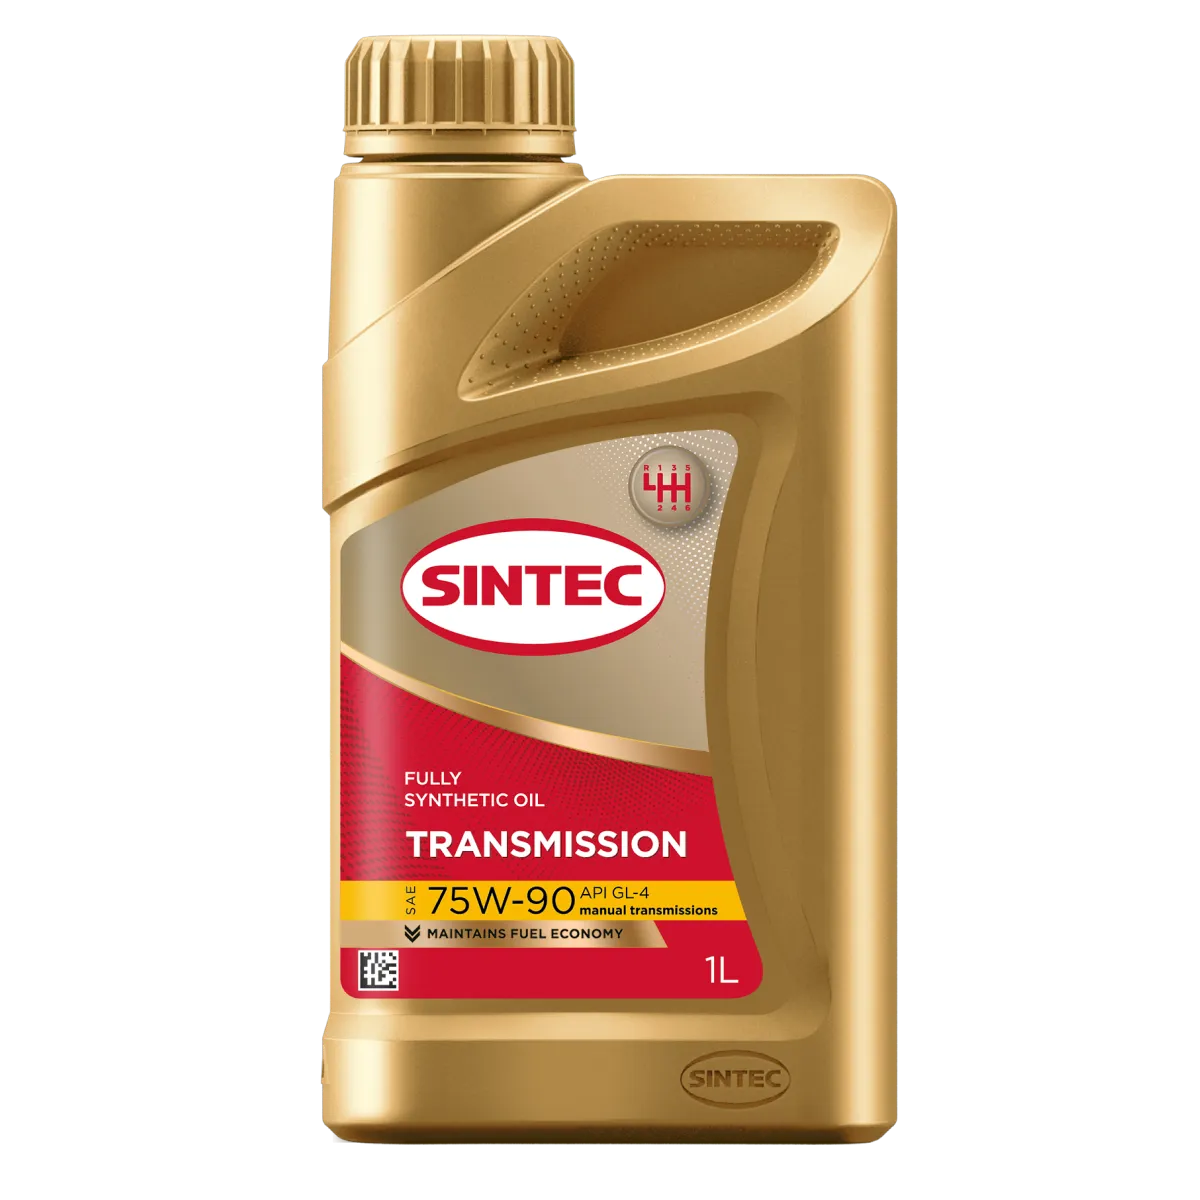 SINTEC TRANSMISSION ТМ4 SAE 75W-90 API GL-4 Трансмиссионные масла: описание, применение, свойства, где
							купить